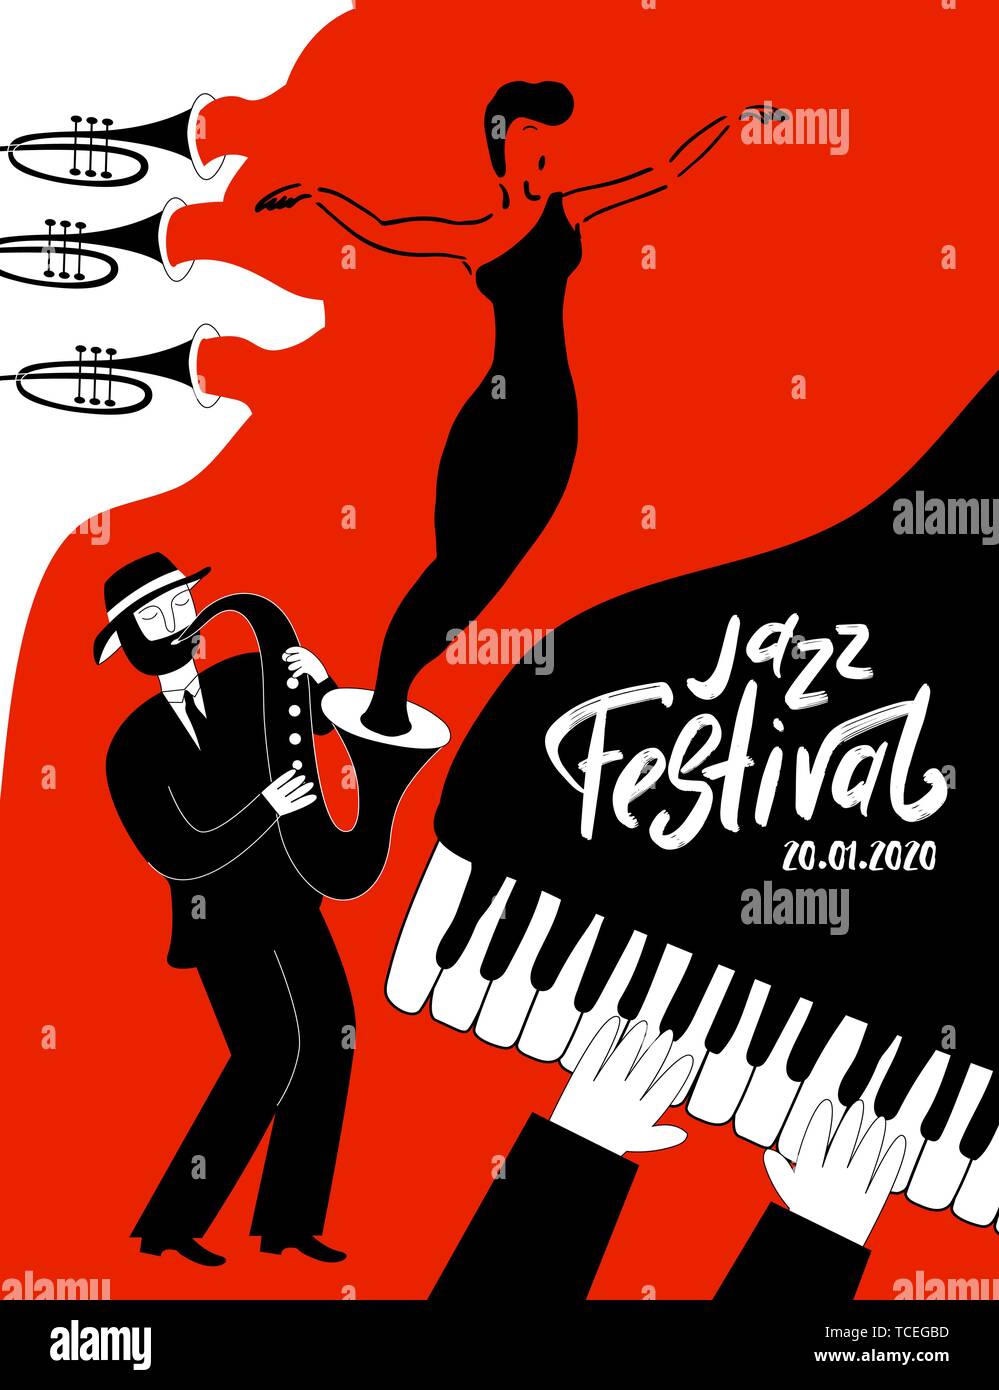 Festival de musique jazz avec des instruments de musique de l'affiche. Journée internationale du Jazz. Vector illustration dessiné à la main. Illustration de Vecteur